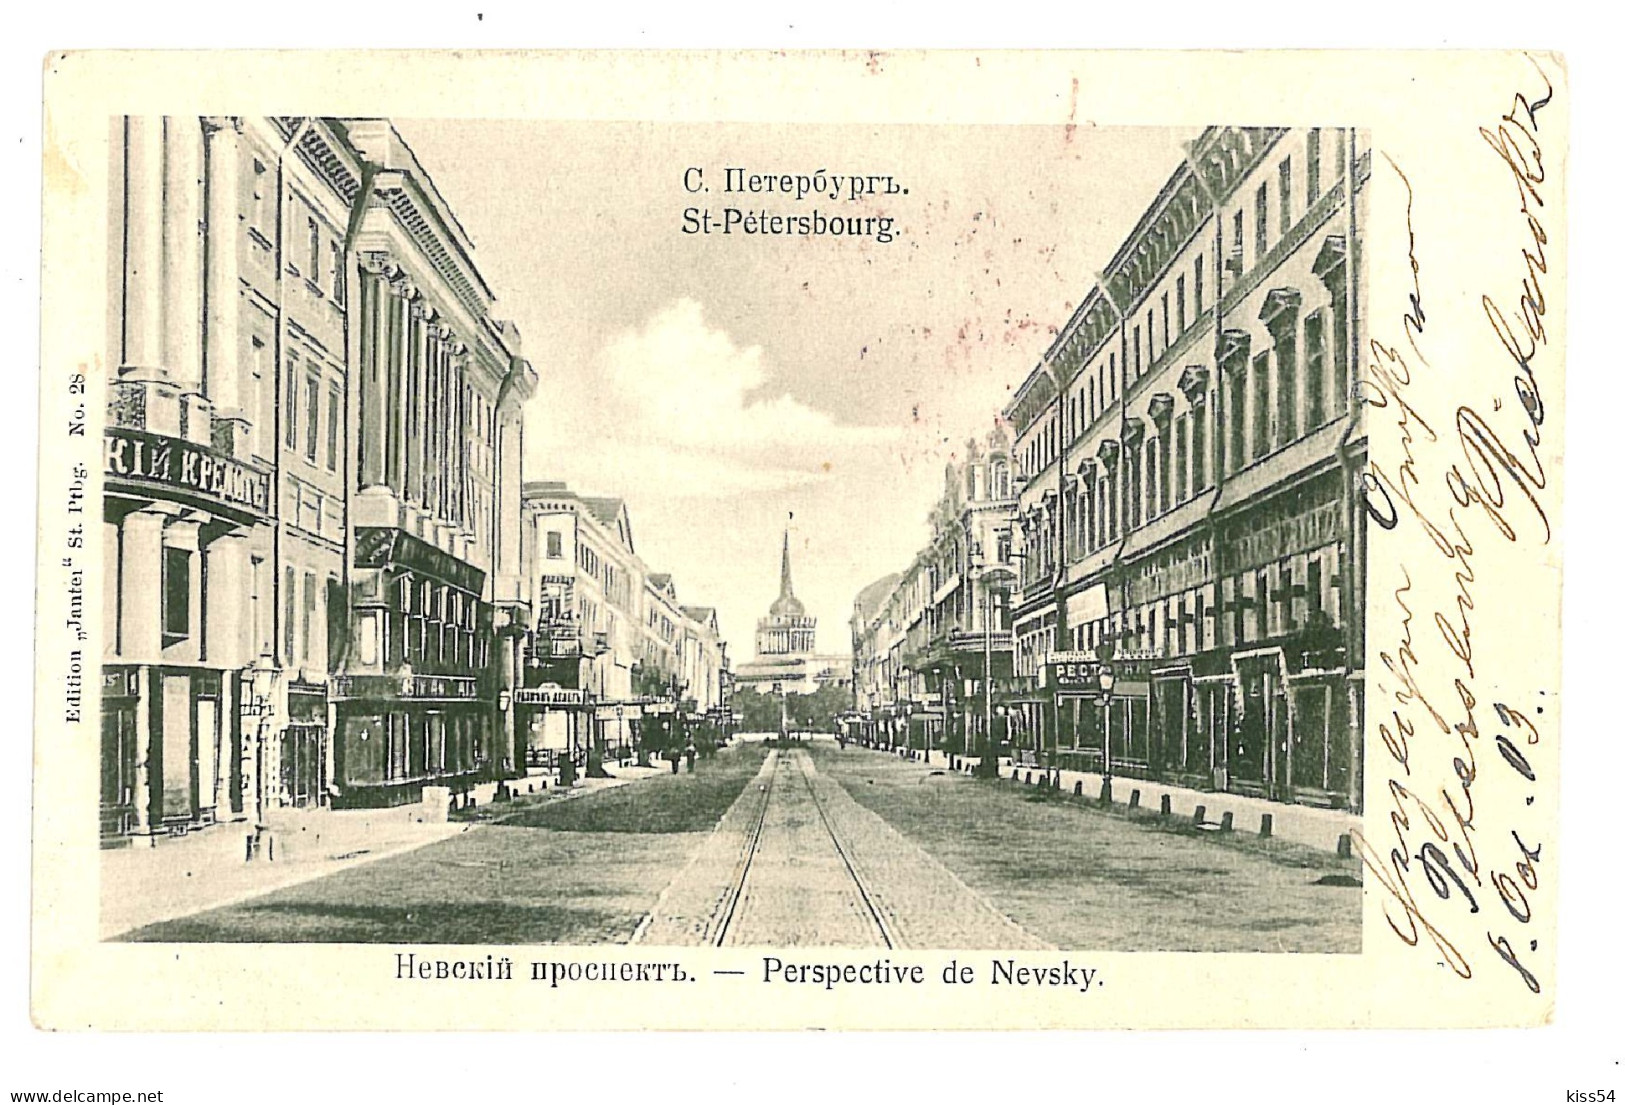 RUS 32 - 9448 SAINT PETERSBURG, Nevsky Street, Russia - Old Postcard - Used - 1903 - Russia